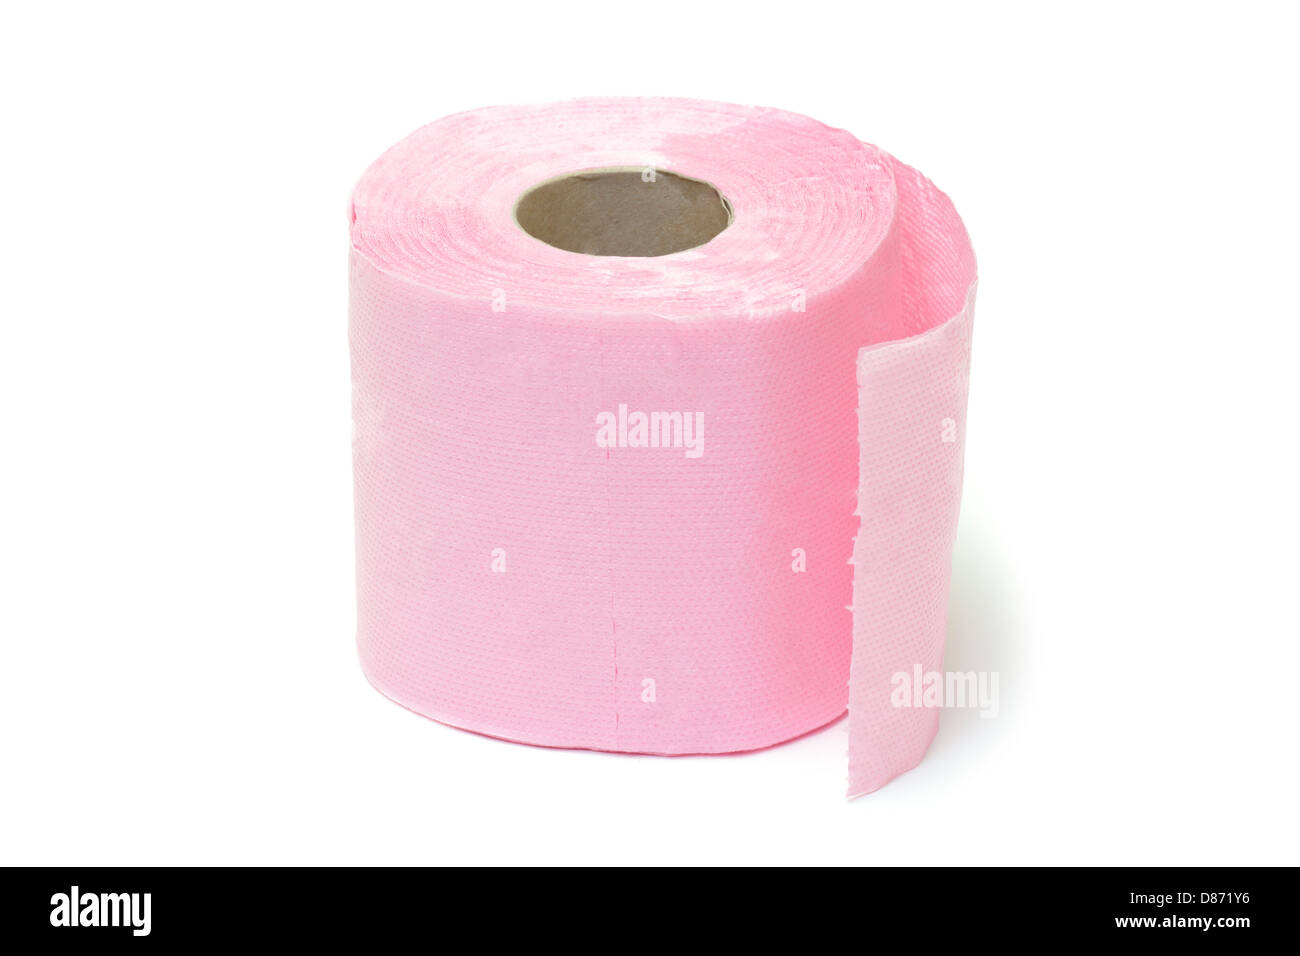 Розовая туалетная бумага. Пушок бумага туалетная розовая упаковка. Туалетная бумага после мочеиспускания с розовым оттенком. Розовая туалетная бумага купить.